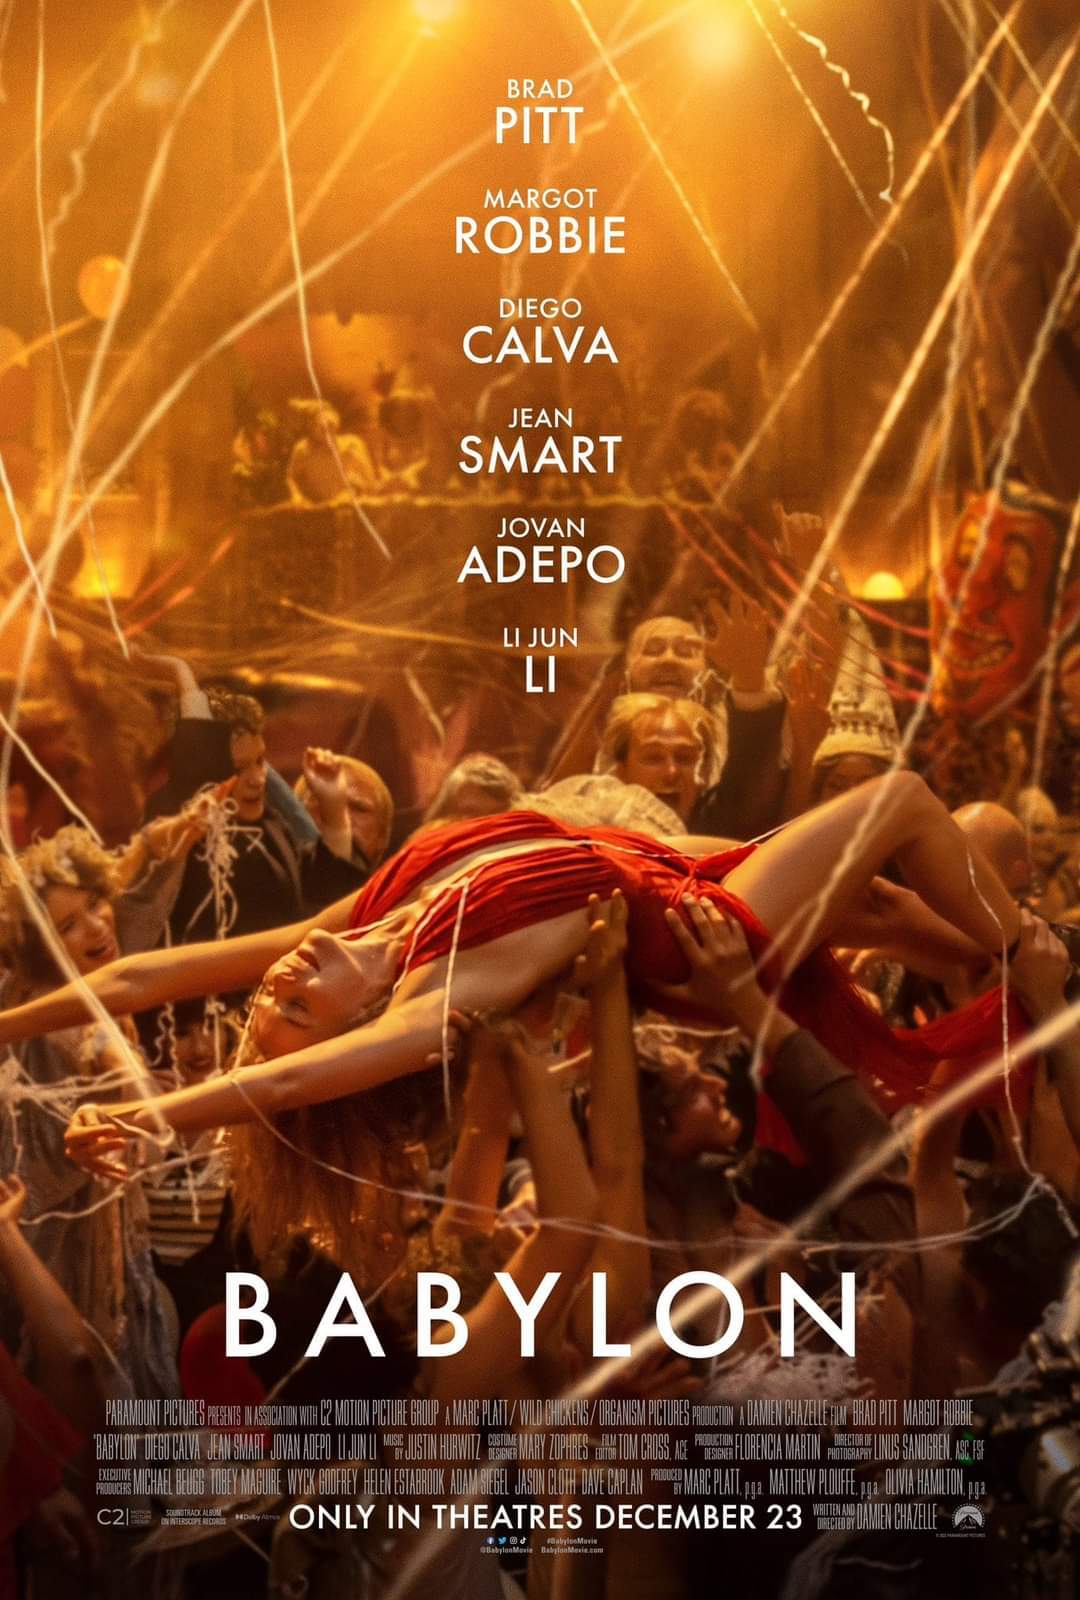 Babylon | Caos, exceso y reflexión